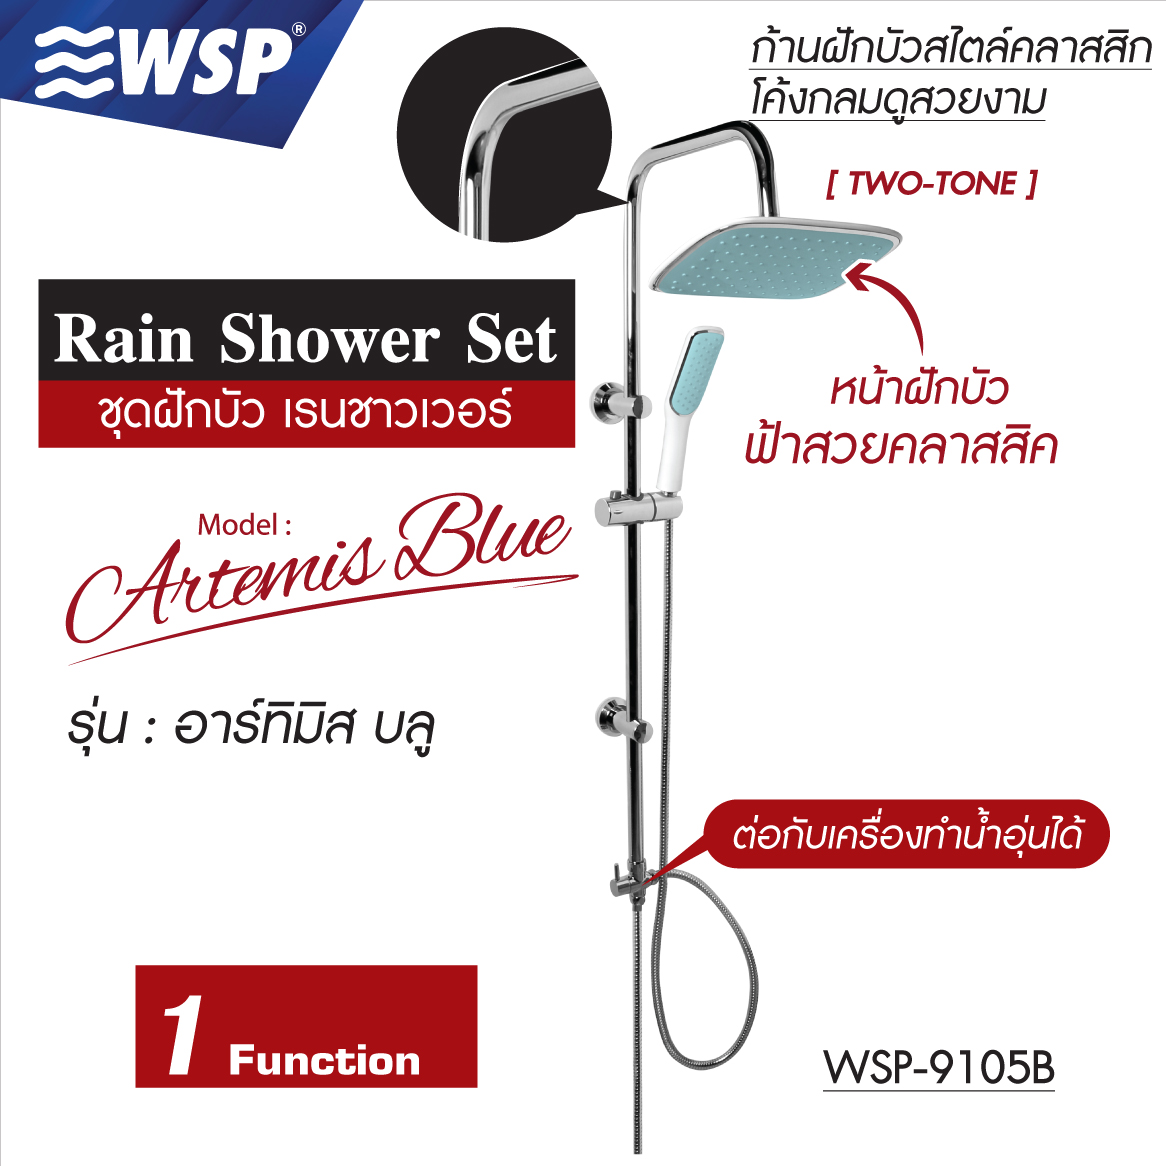 ชุดฝักบัวเรนชาวเวอร์ Rain Shower Set (ARTEMIS BLUE) รุ่น WSP-9105B